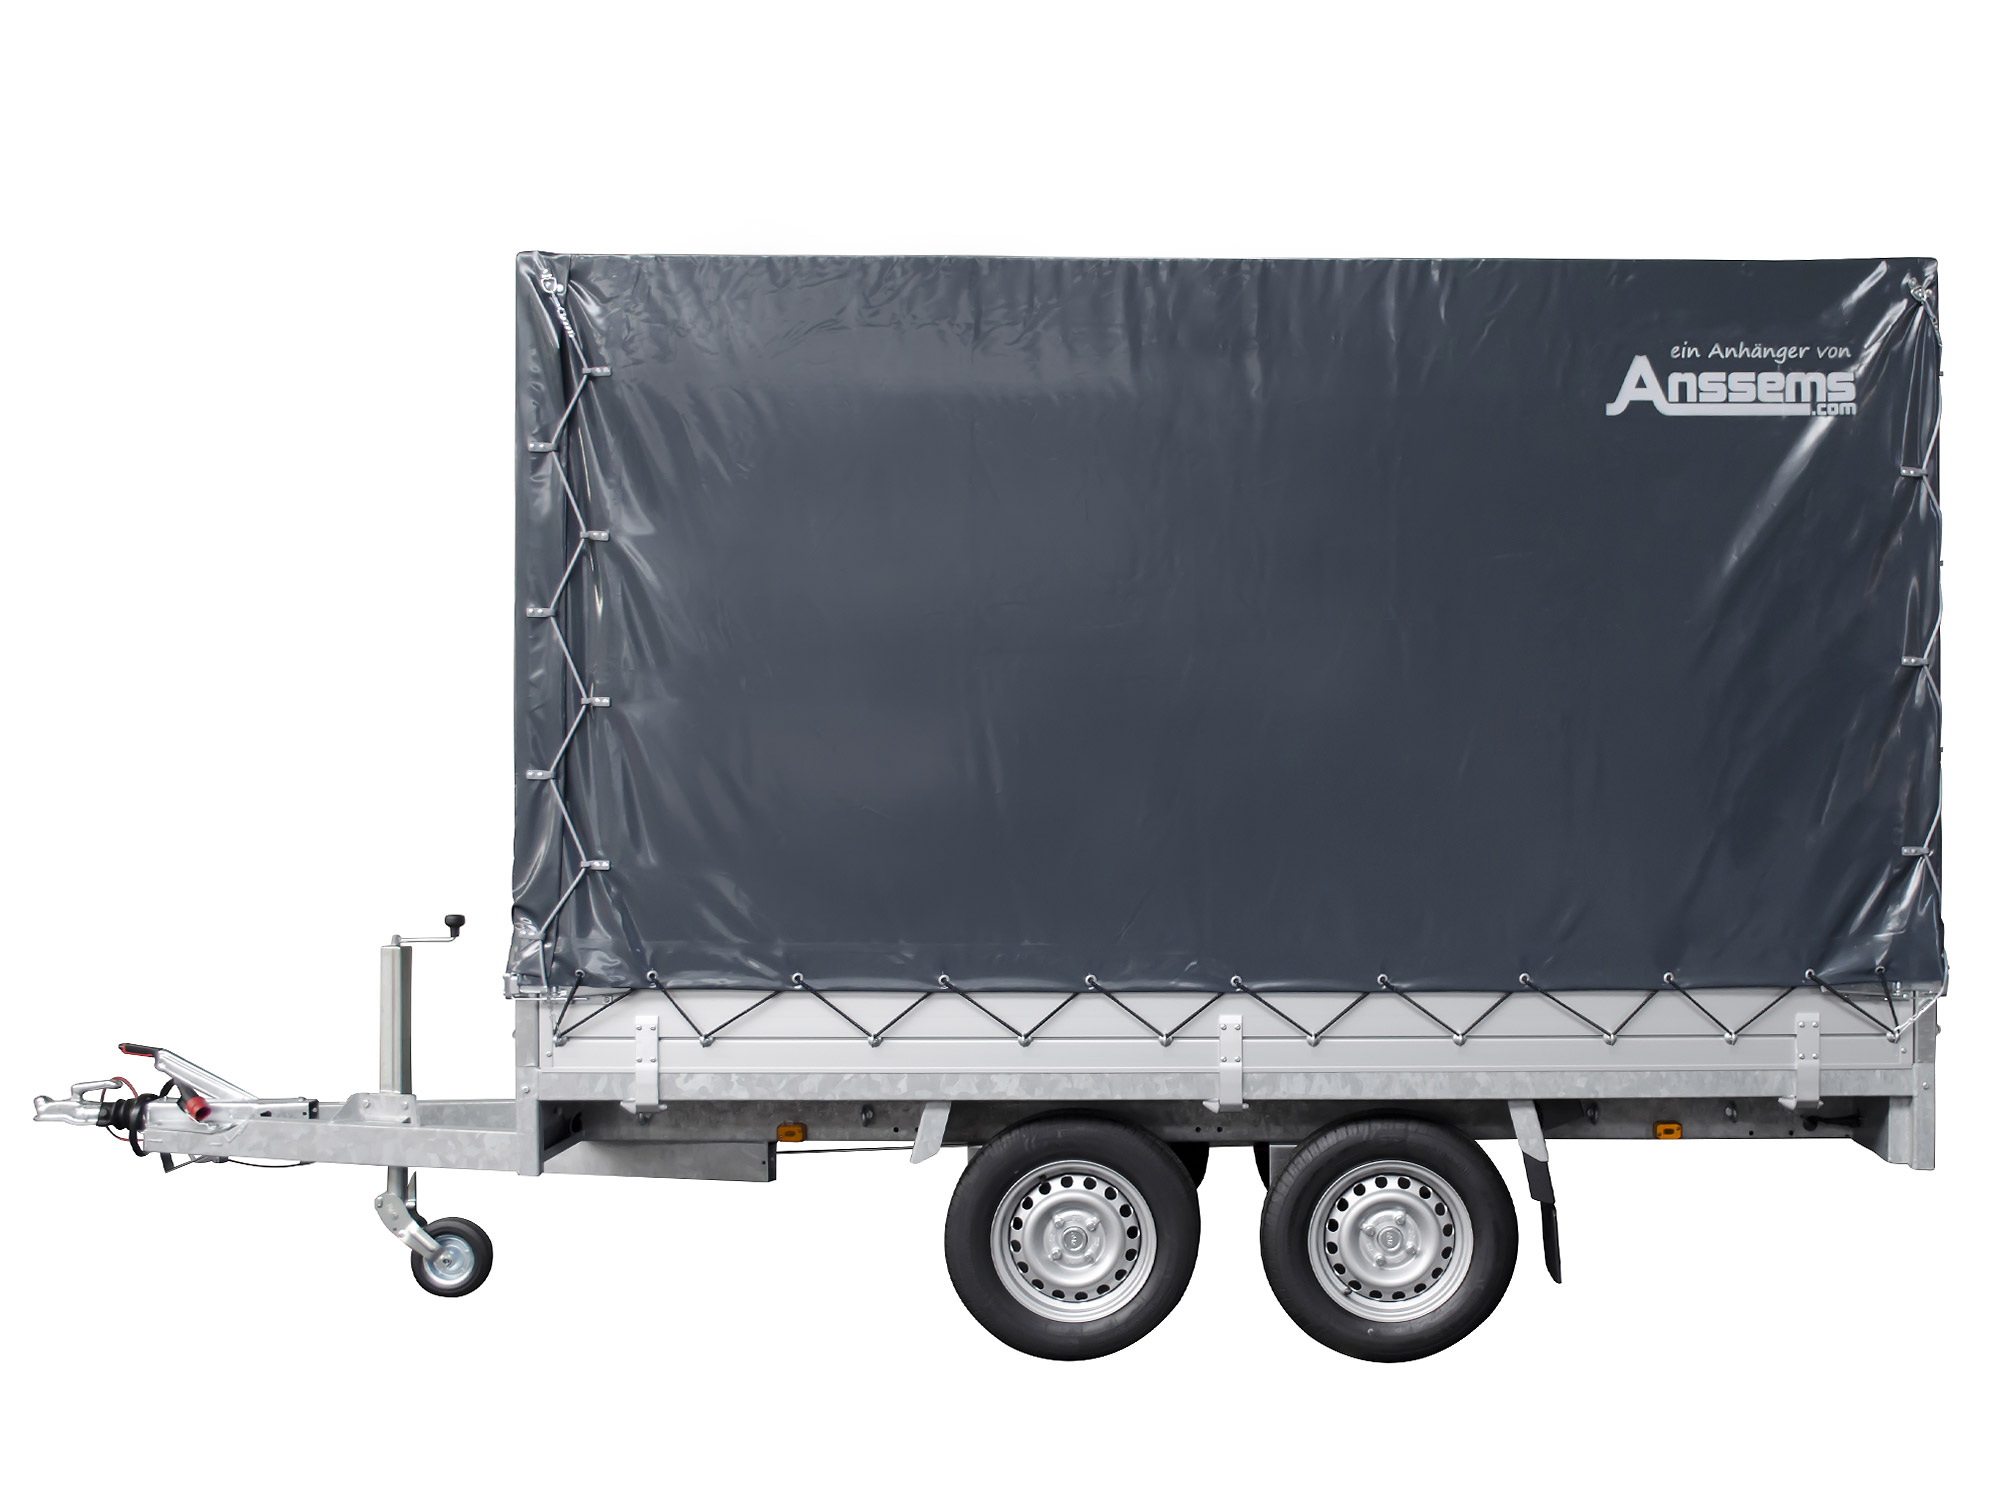 Anssems PKW Anhänger Hochlader Alu 2000 kg, Ladefläche 3,05 x 1,53 m mit Aktionsplane 1,80m